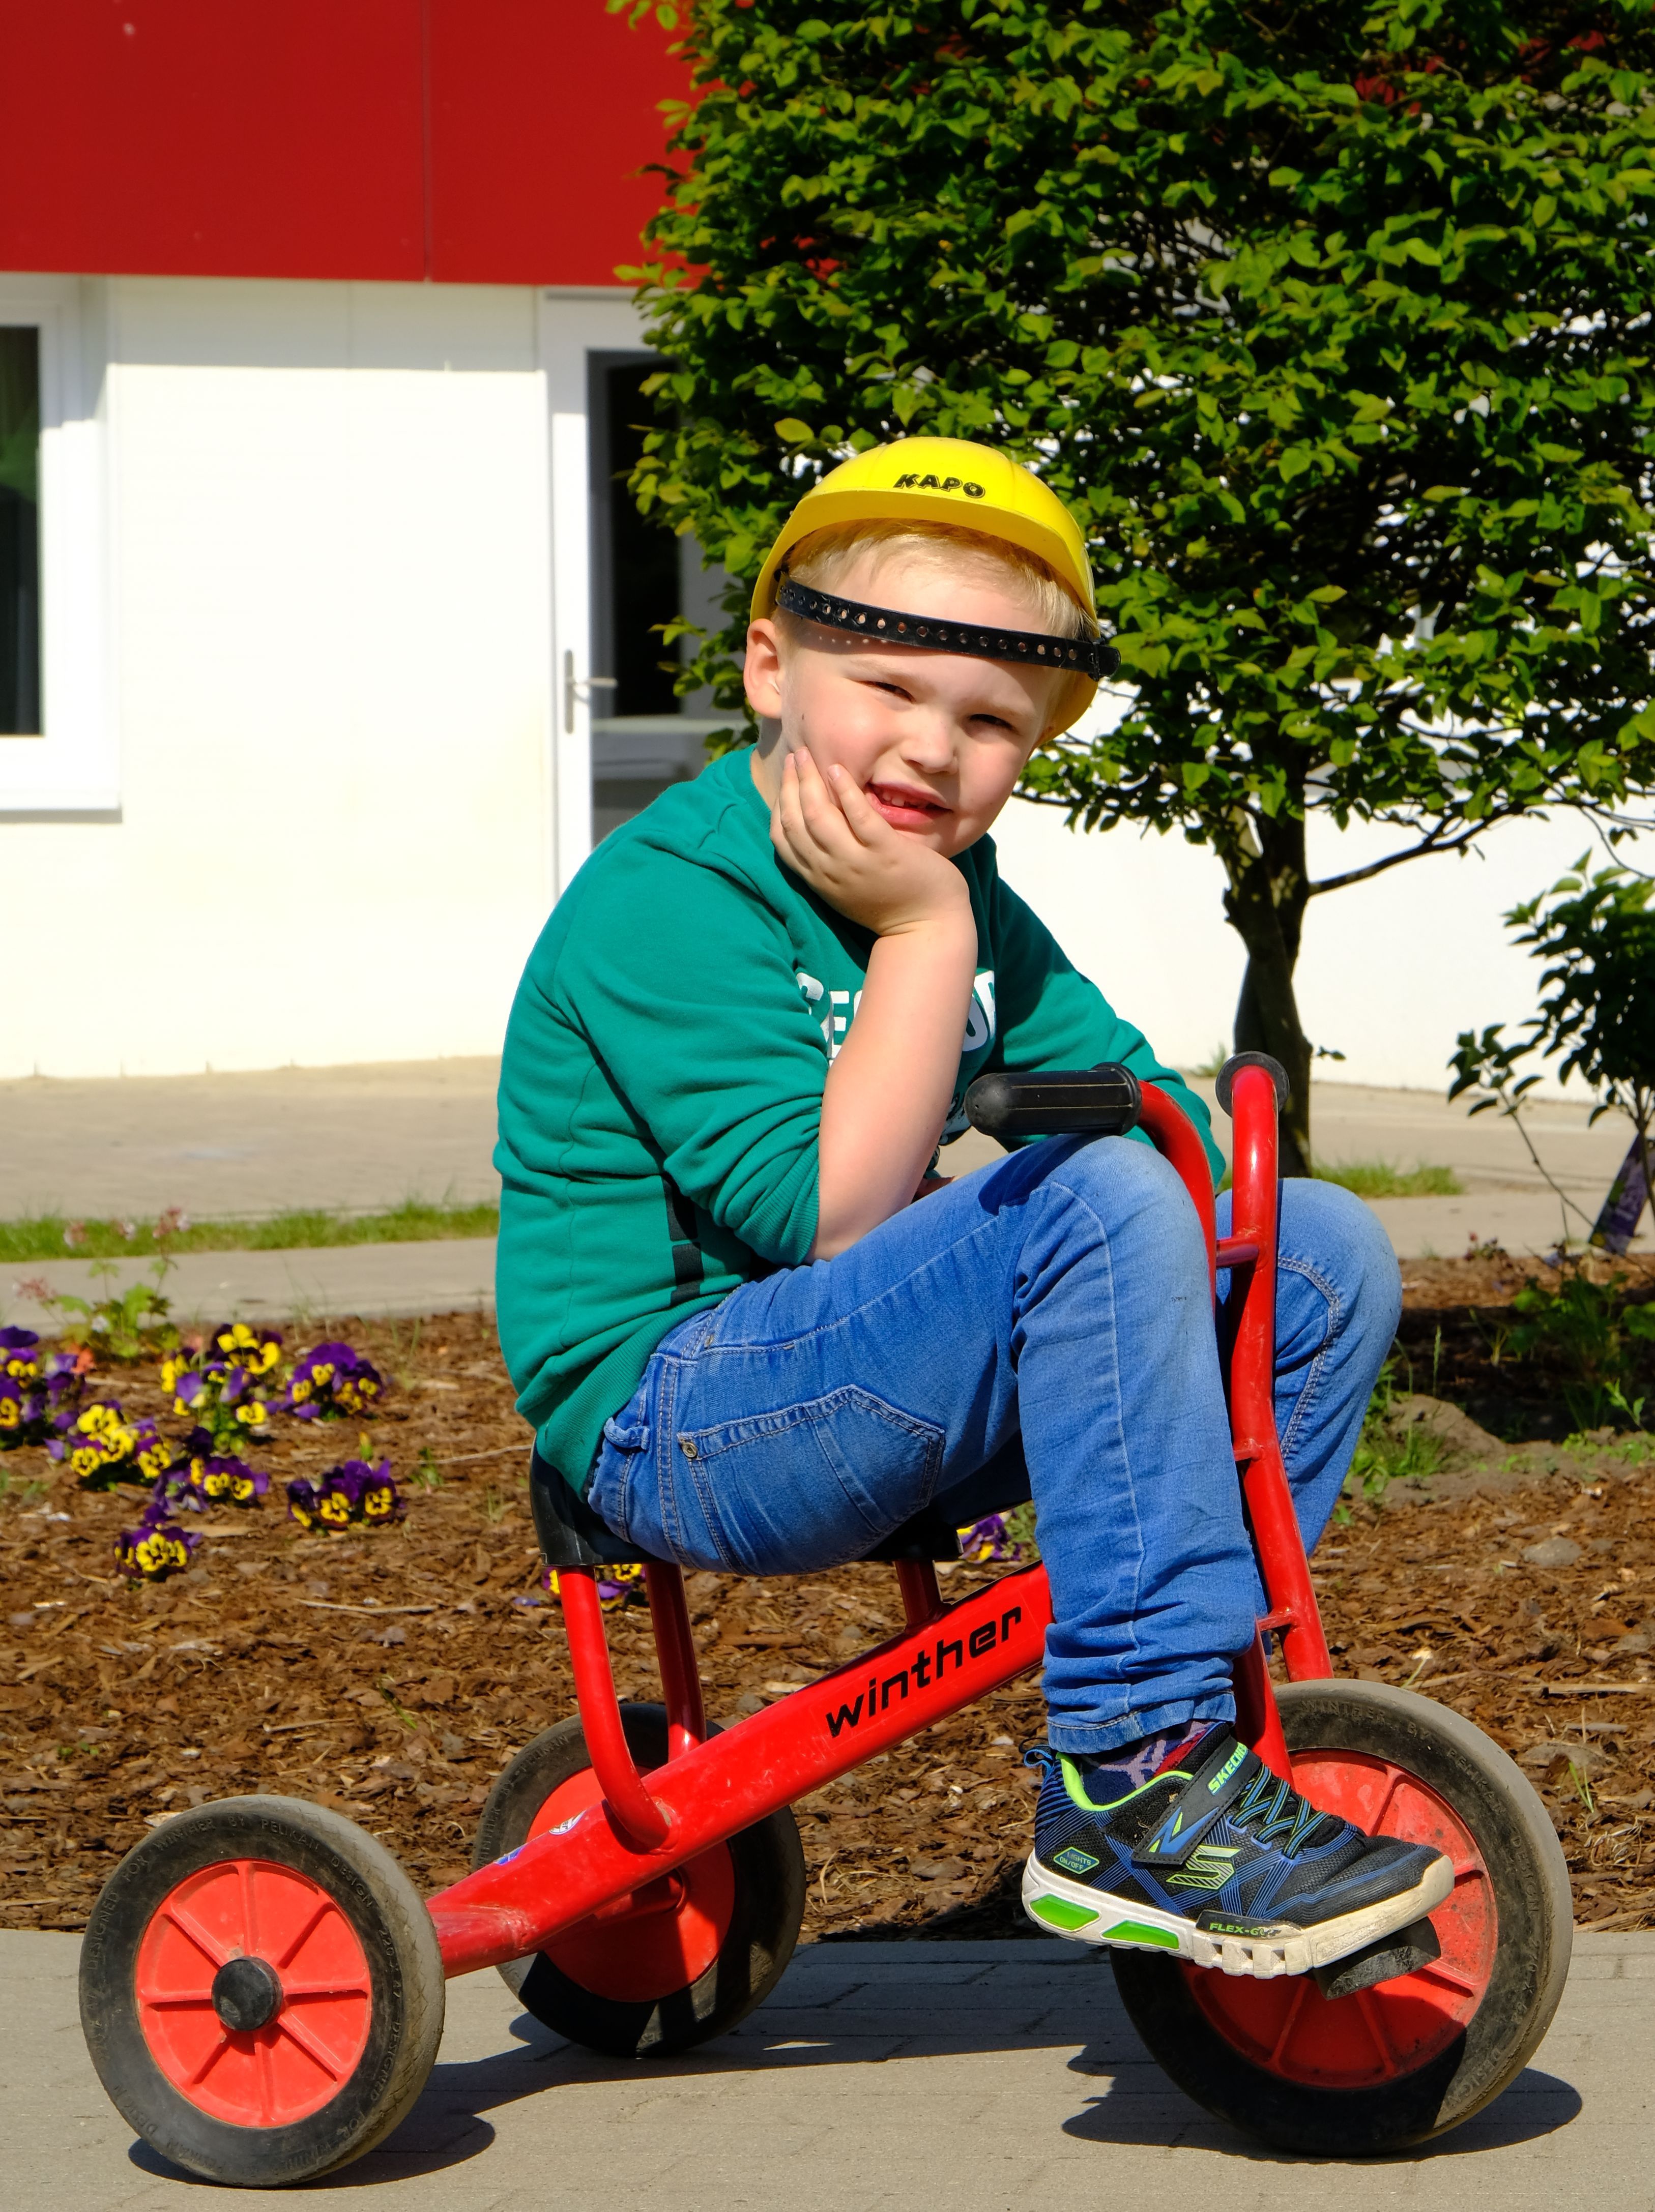 Foto: Ein Junge mit Bauarbeiterhelm sitzt auf einem Dreirad